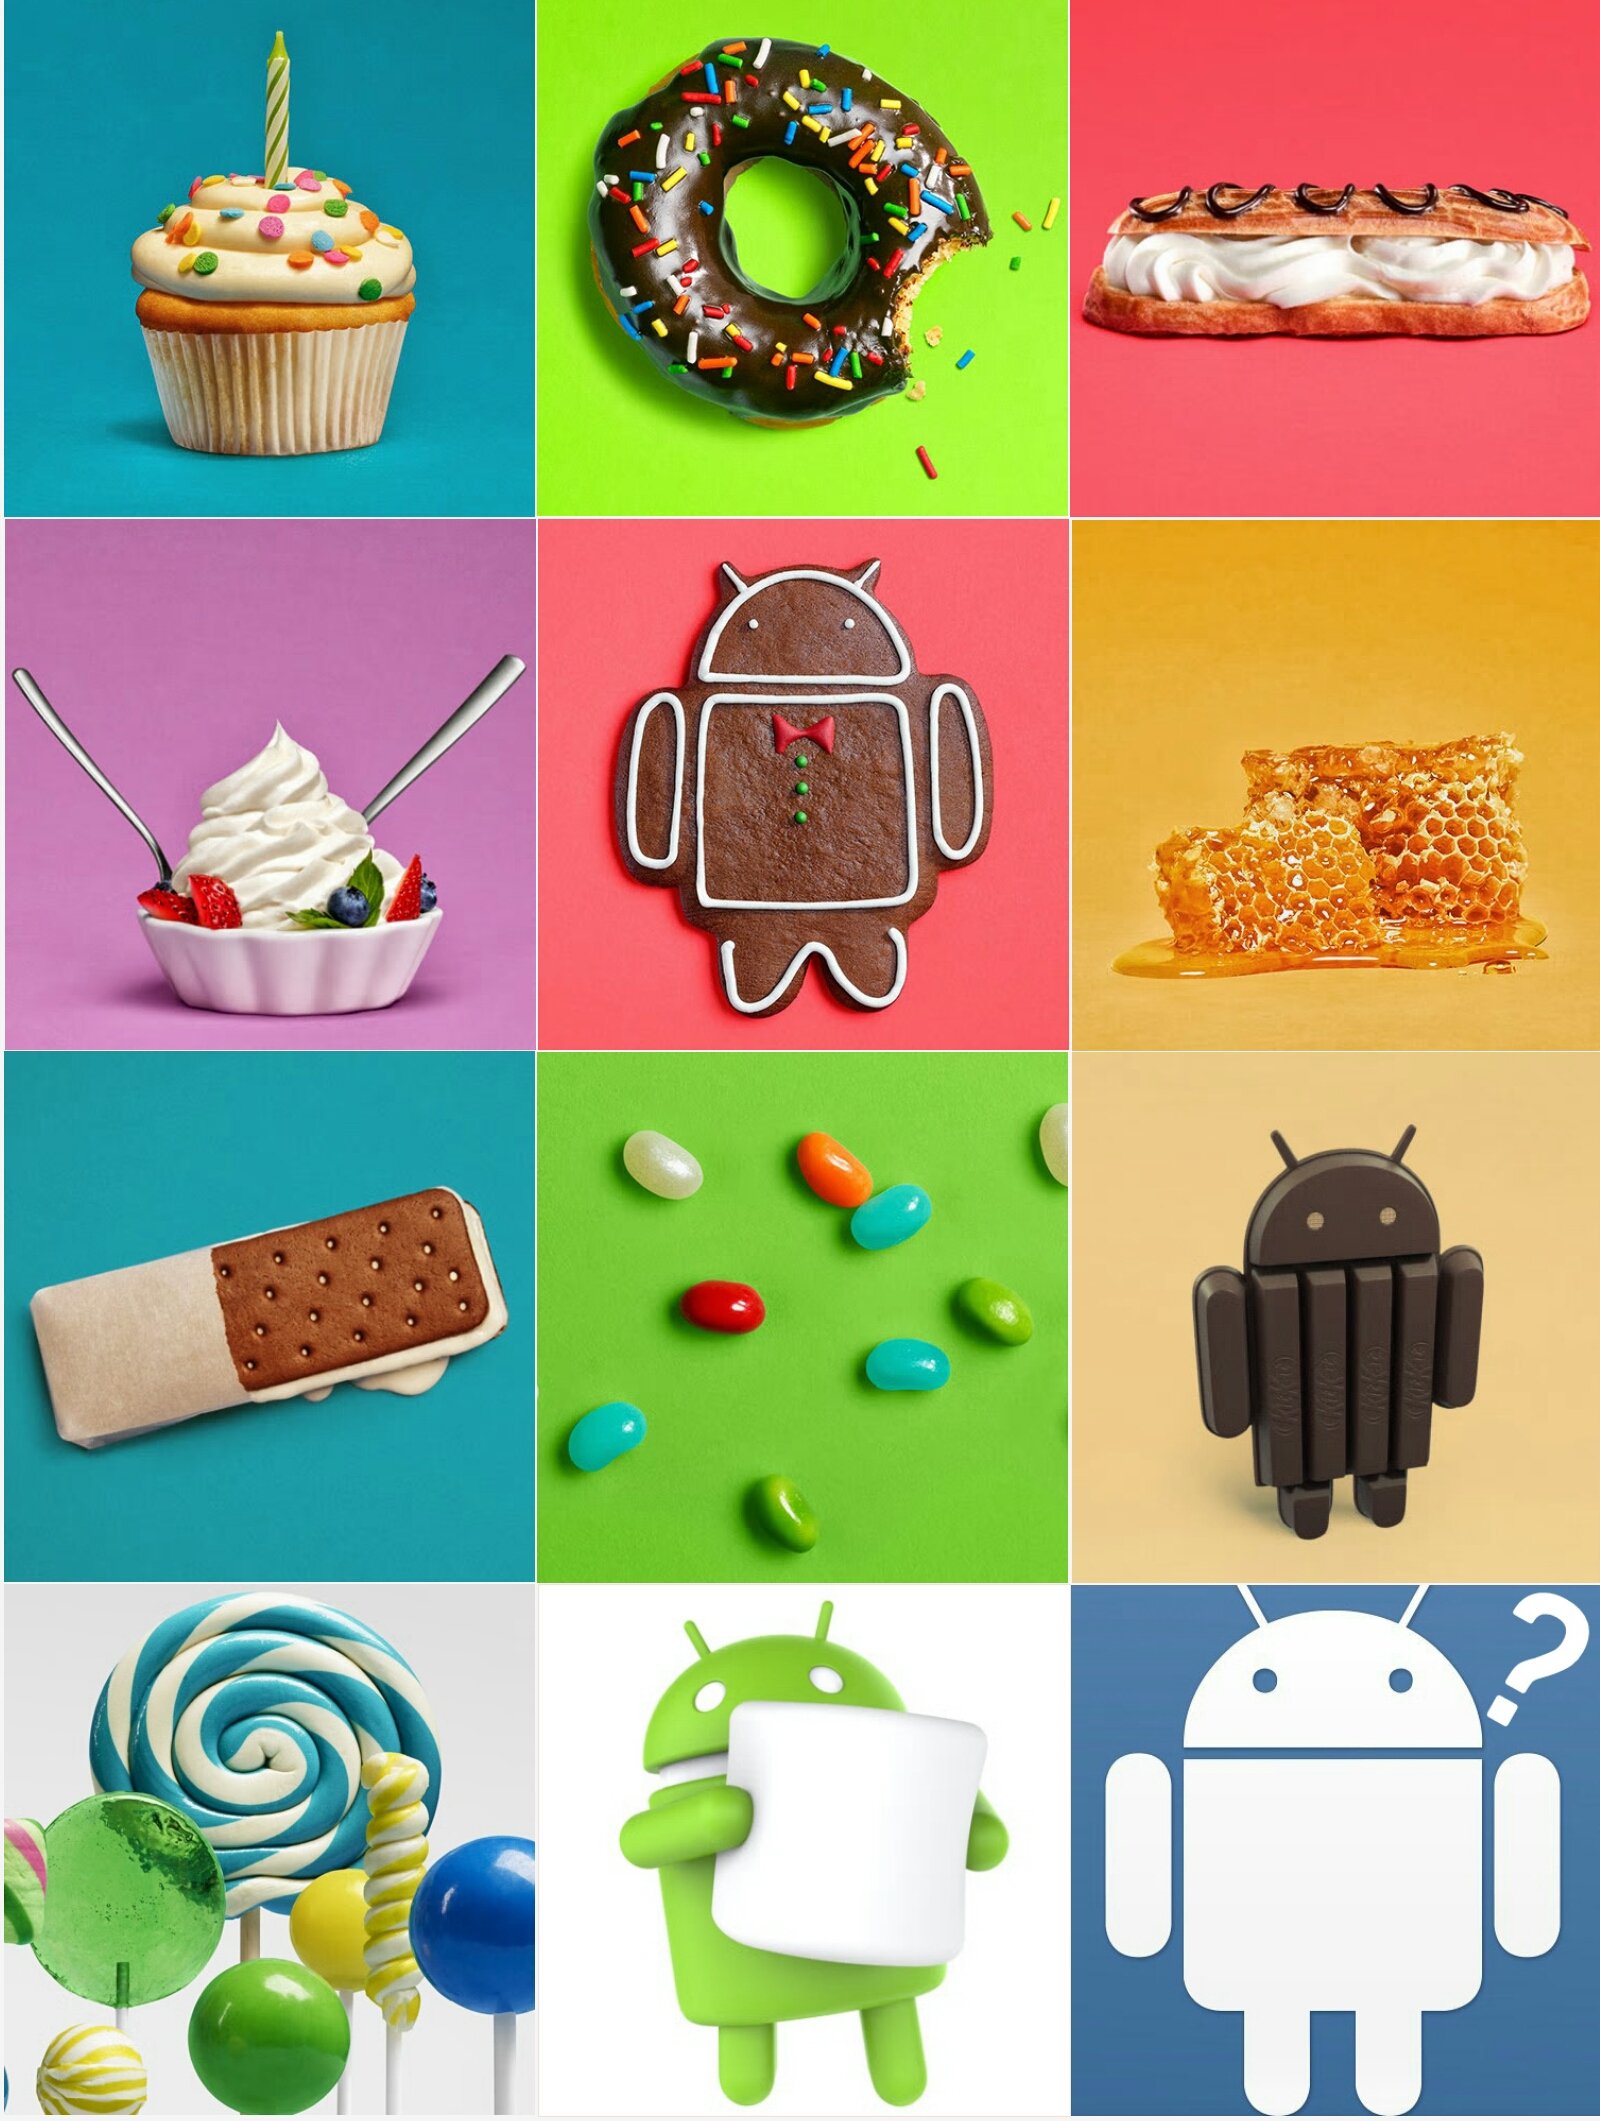 Android 7.0'ı indir